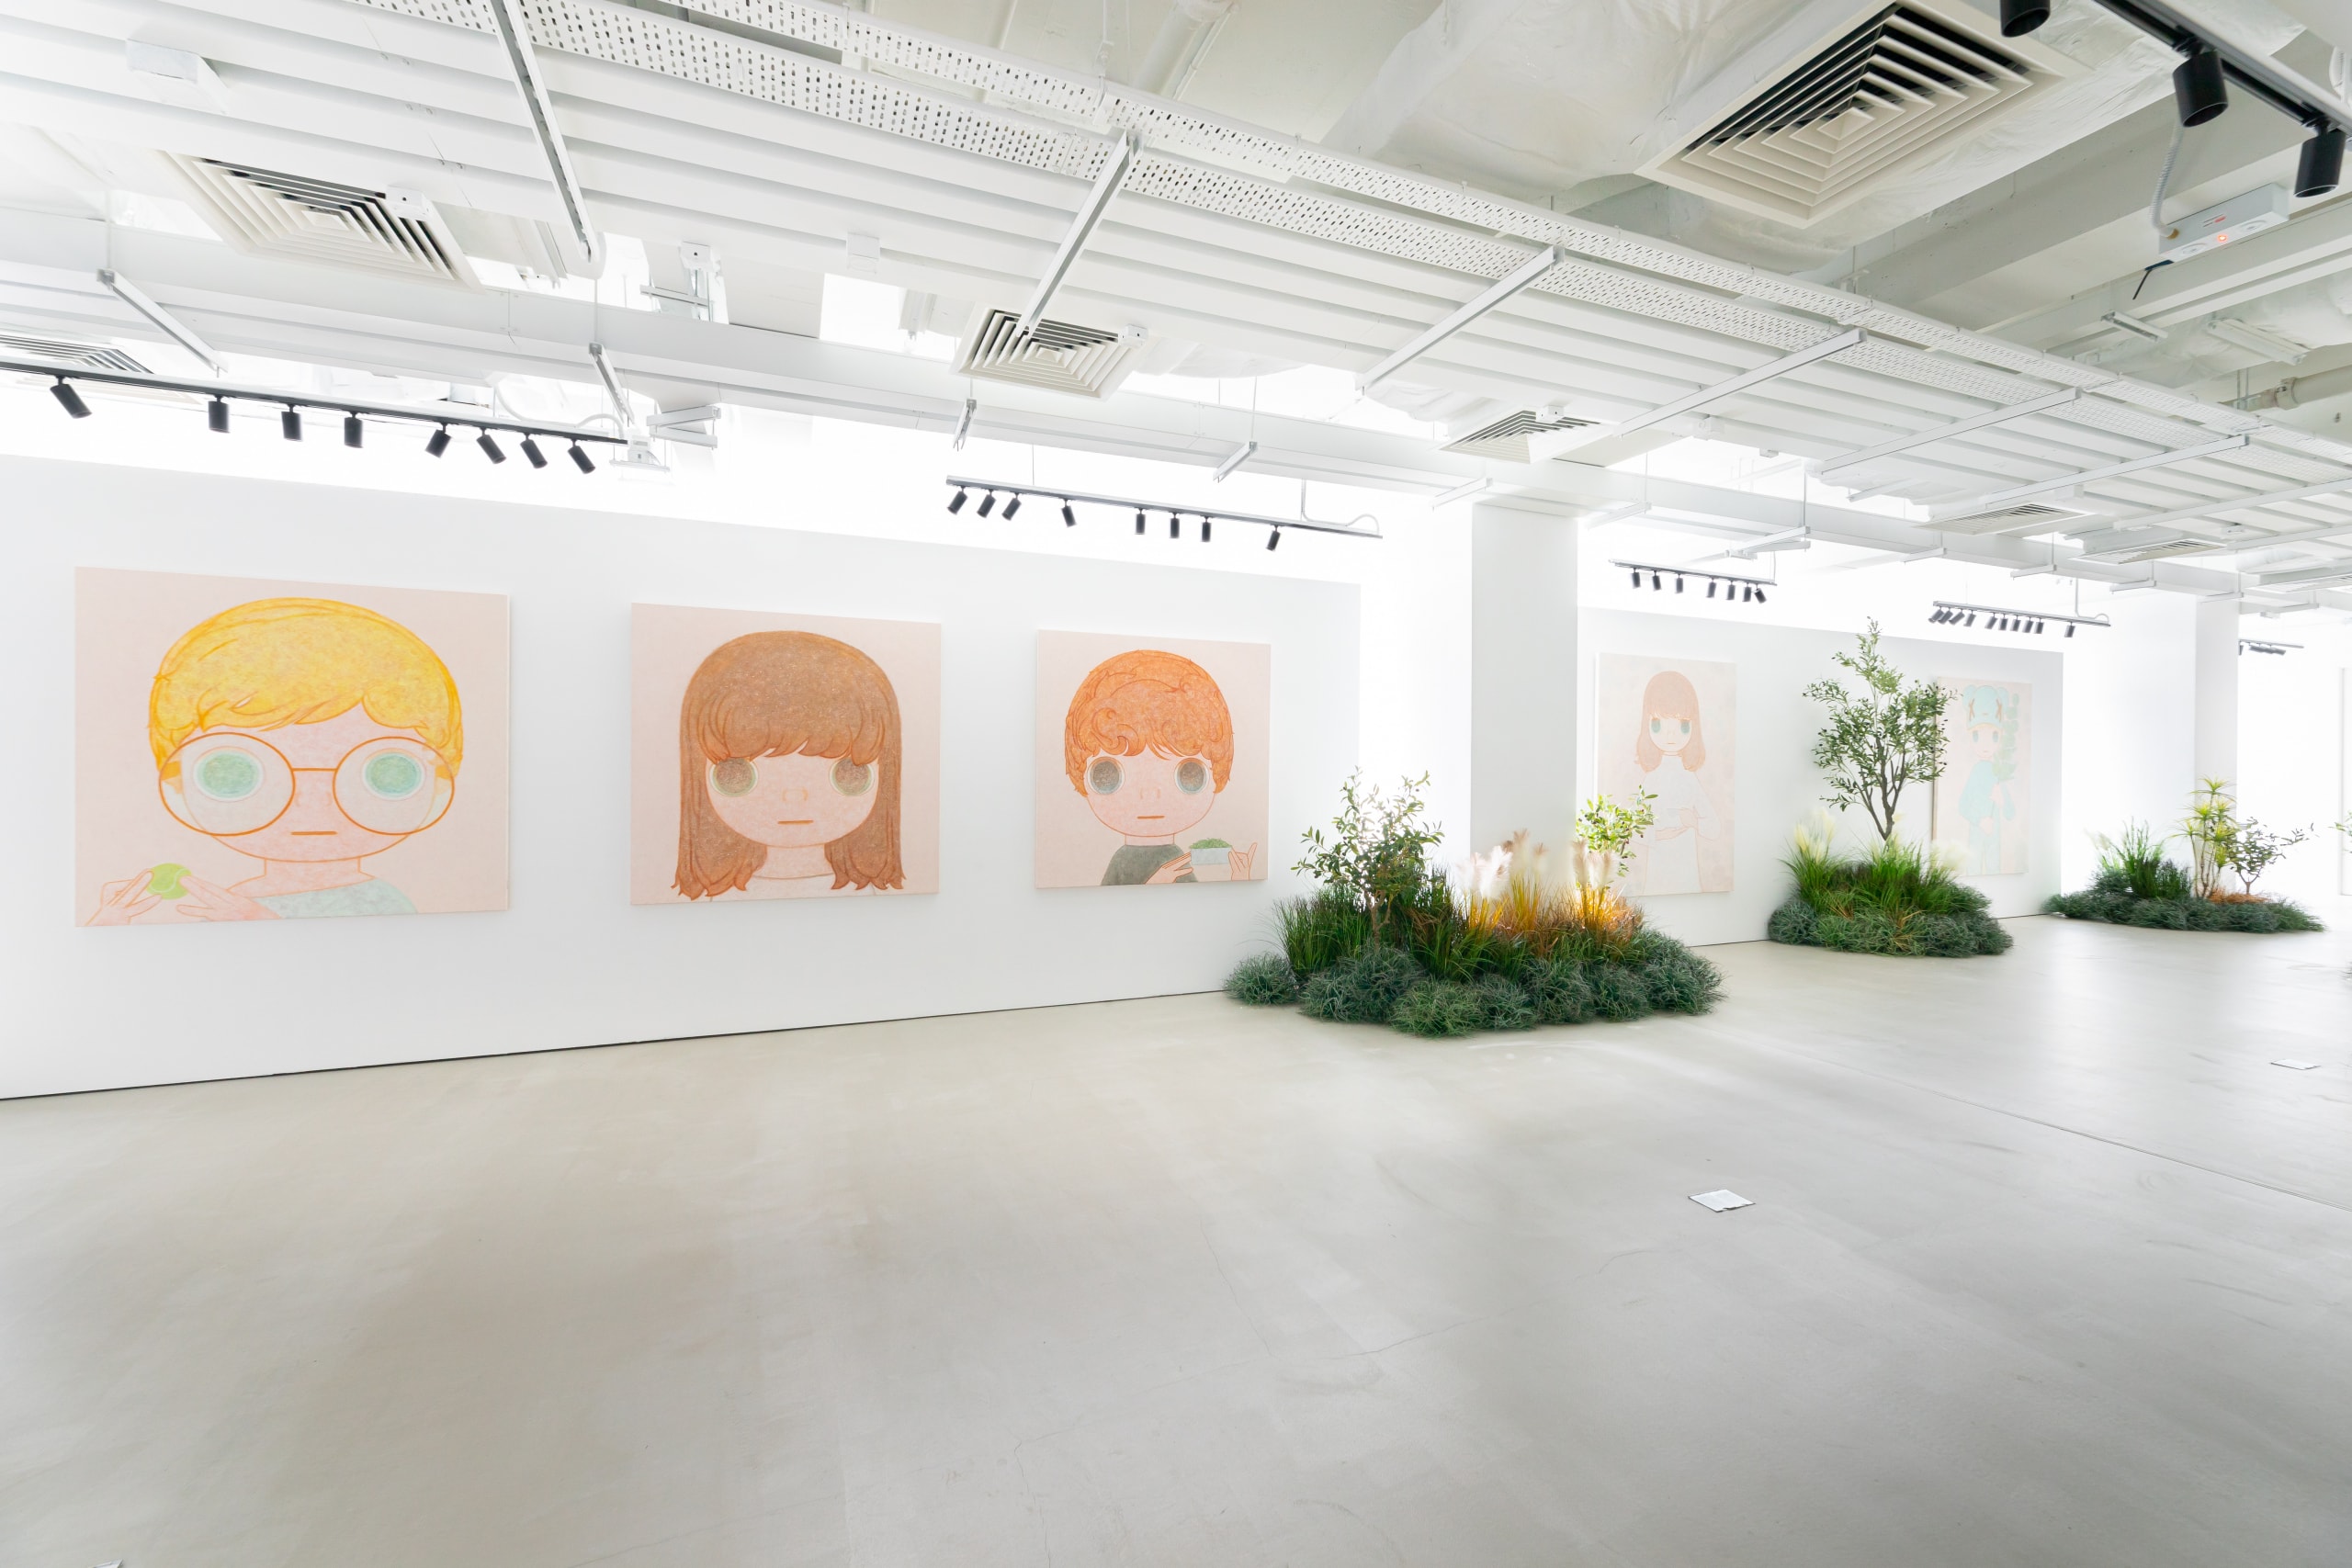 率先走進韓國藝術家 Kang Jun Seok 首次國際個展《My Mate in HK》